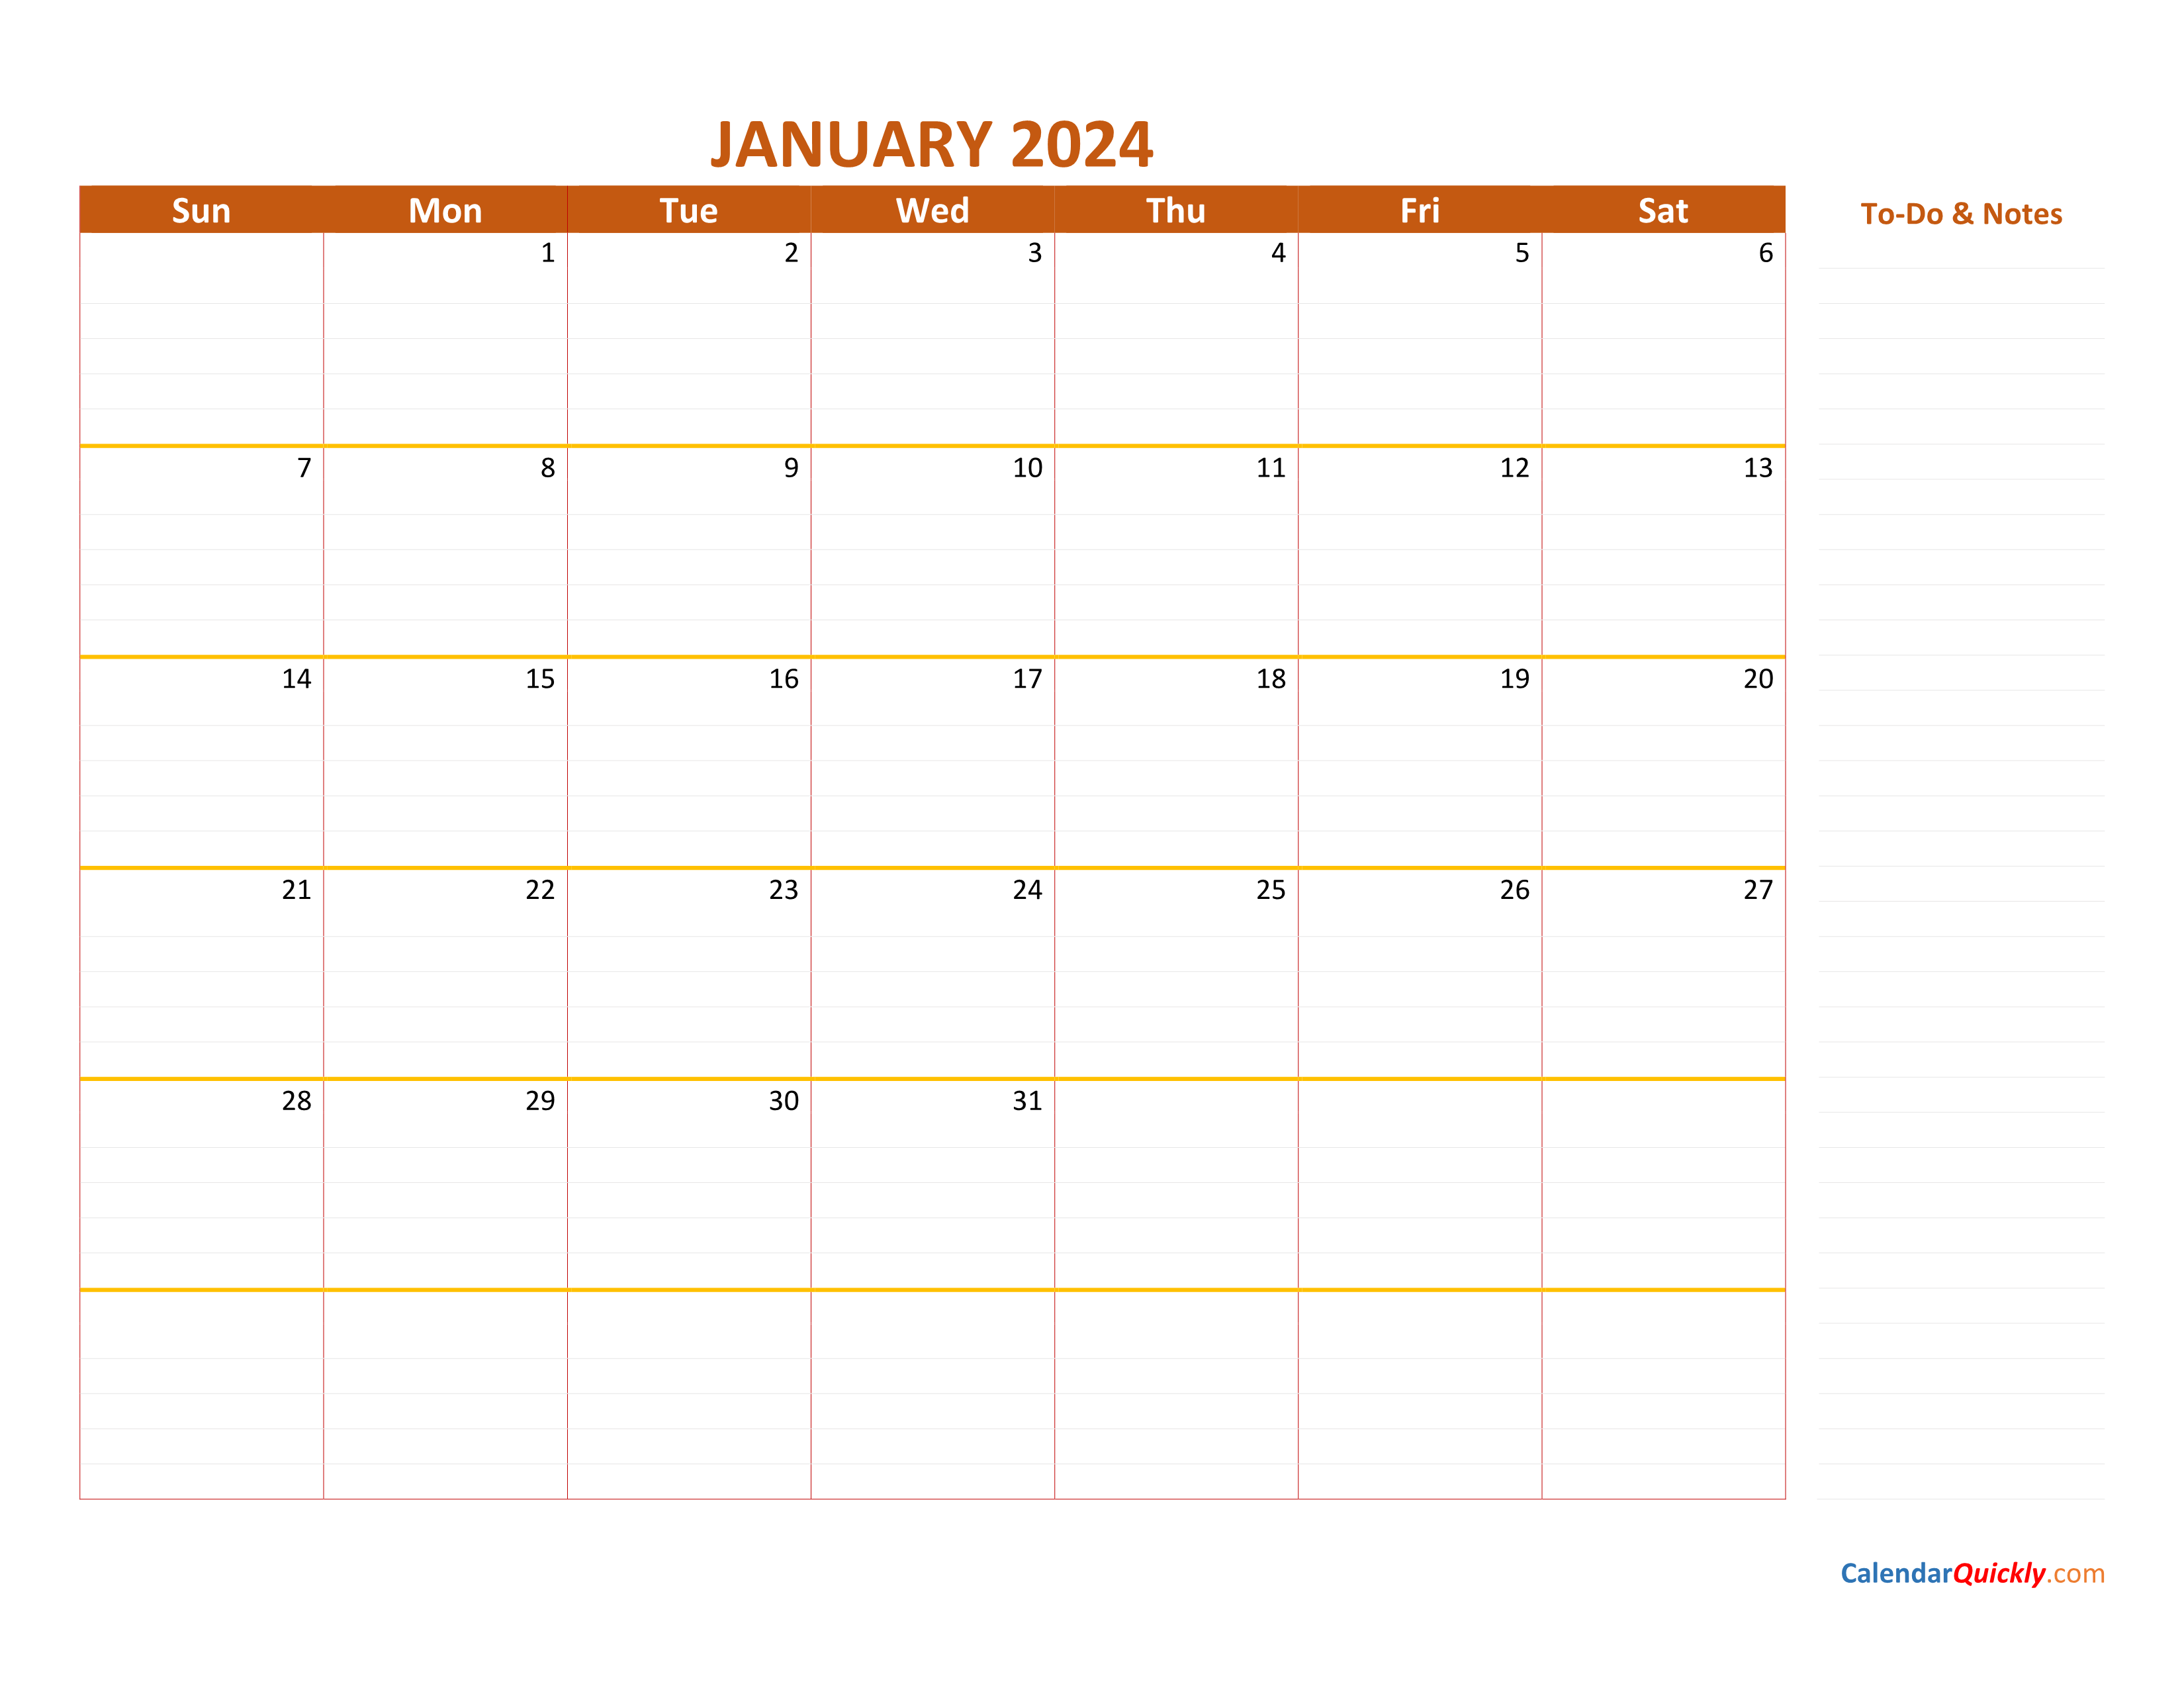 january-2024-calendar-calendar-quickly